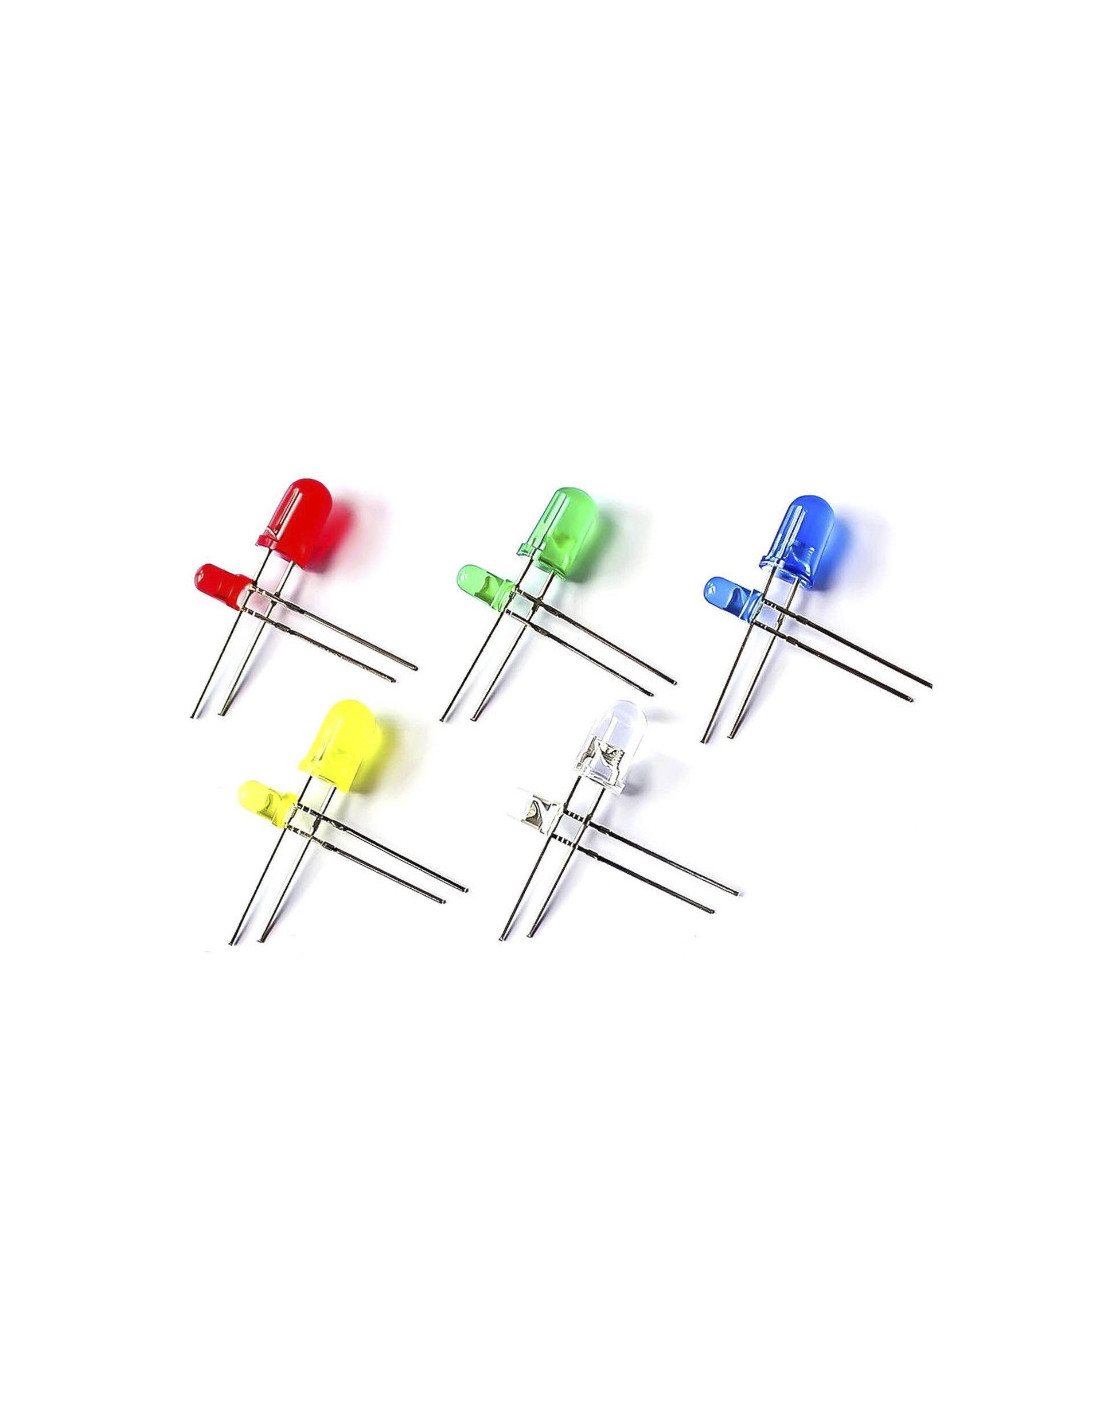 Diodo LED en 5 colores, 5 y 3mm (100uds)